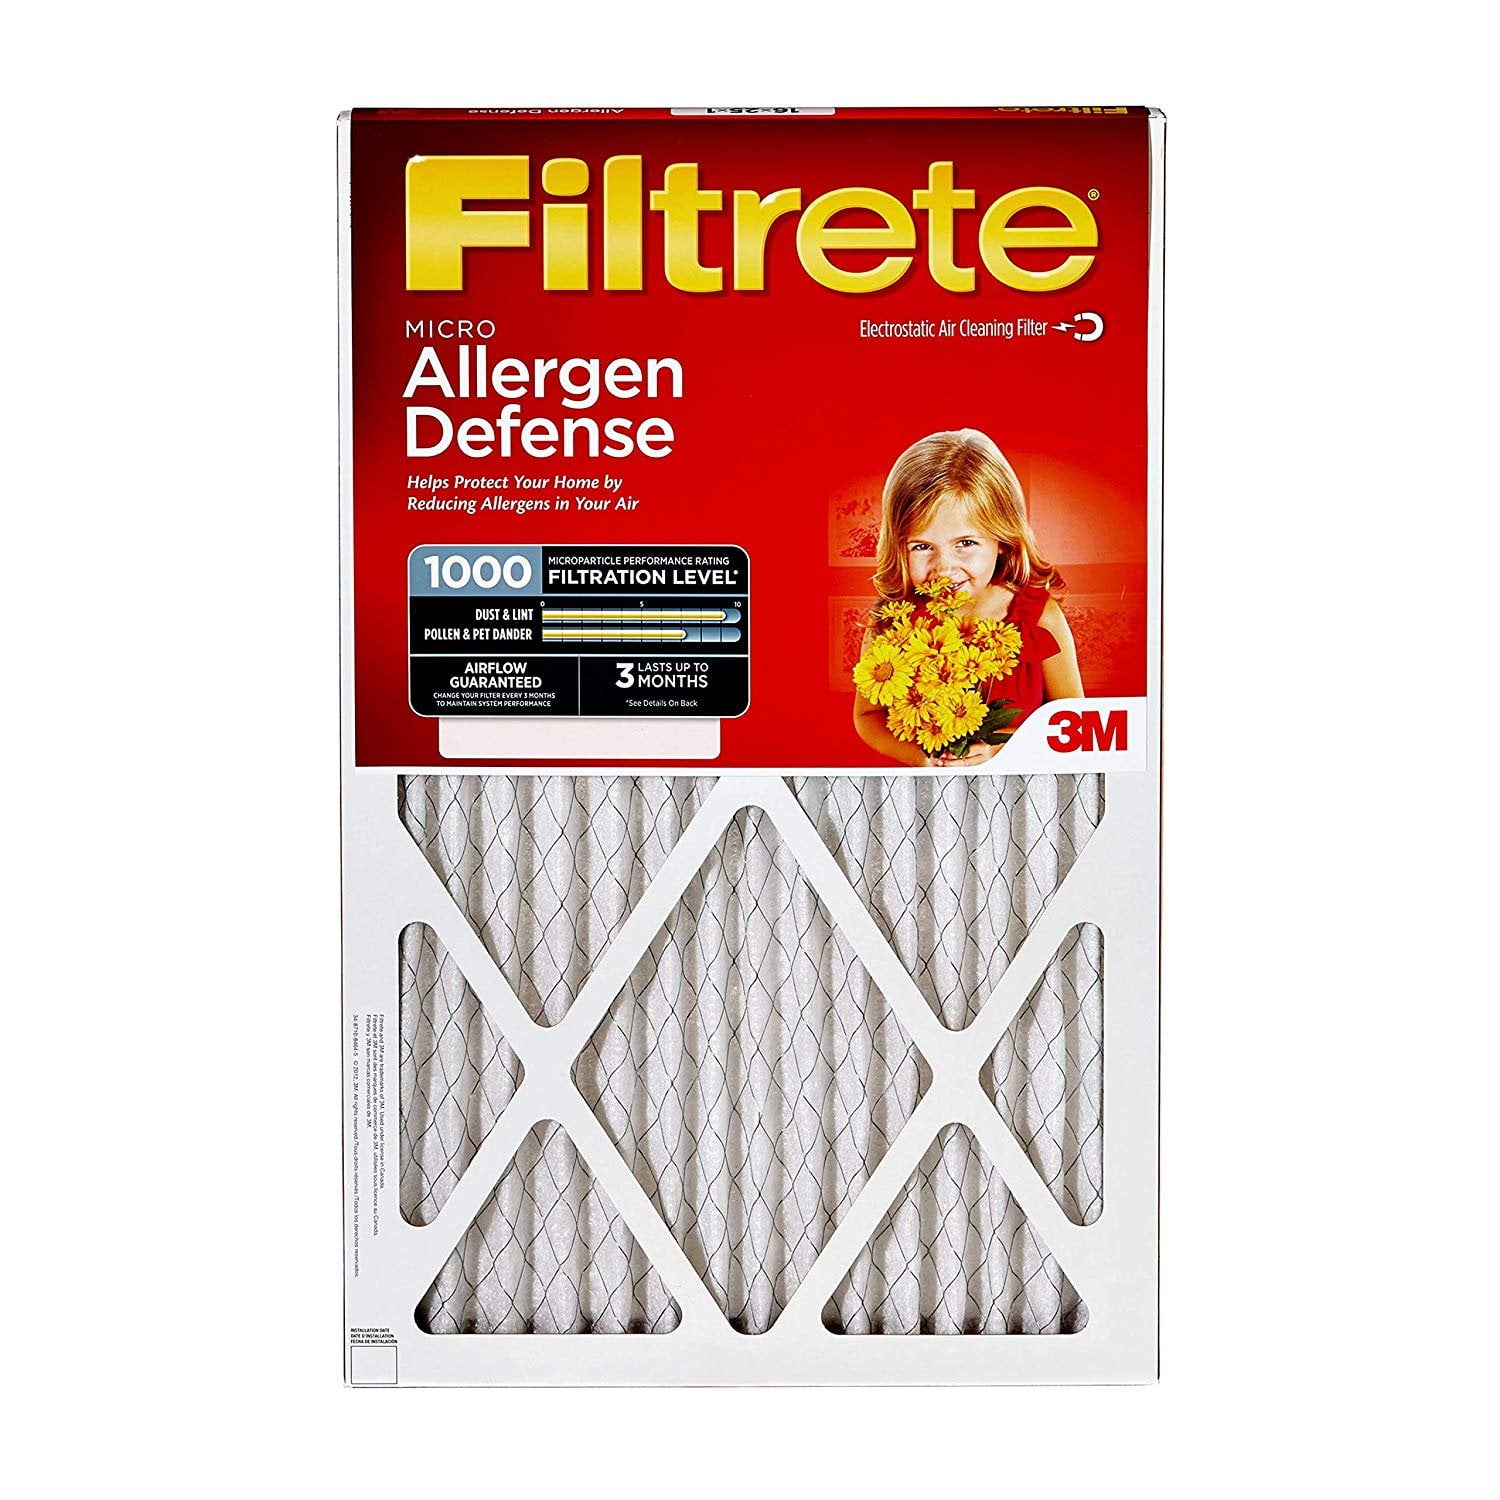 Filtrete 16x25x1 2pk Allergen Defense Air Filter 1000 MPR